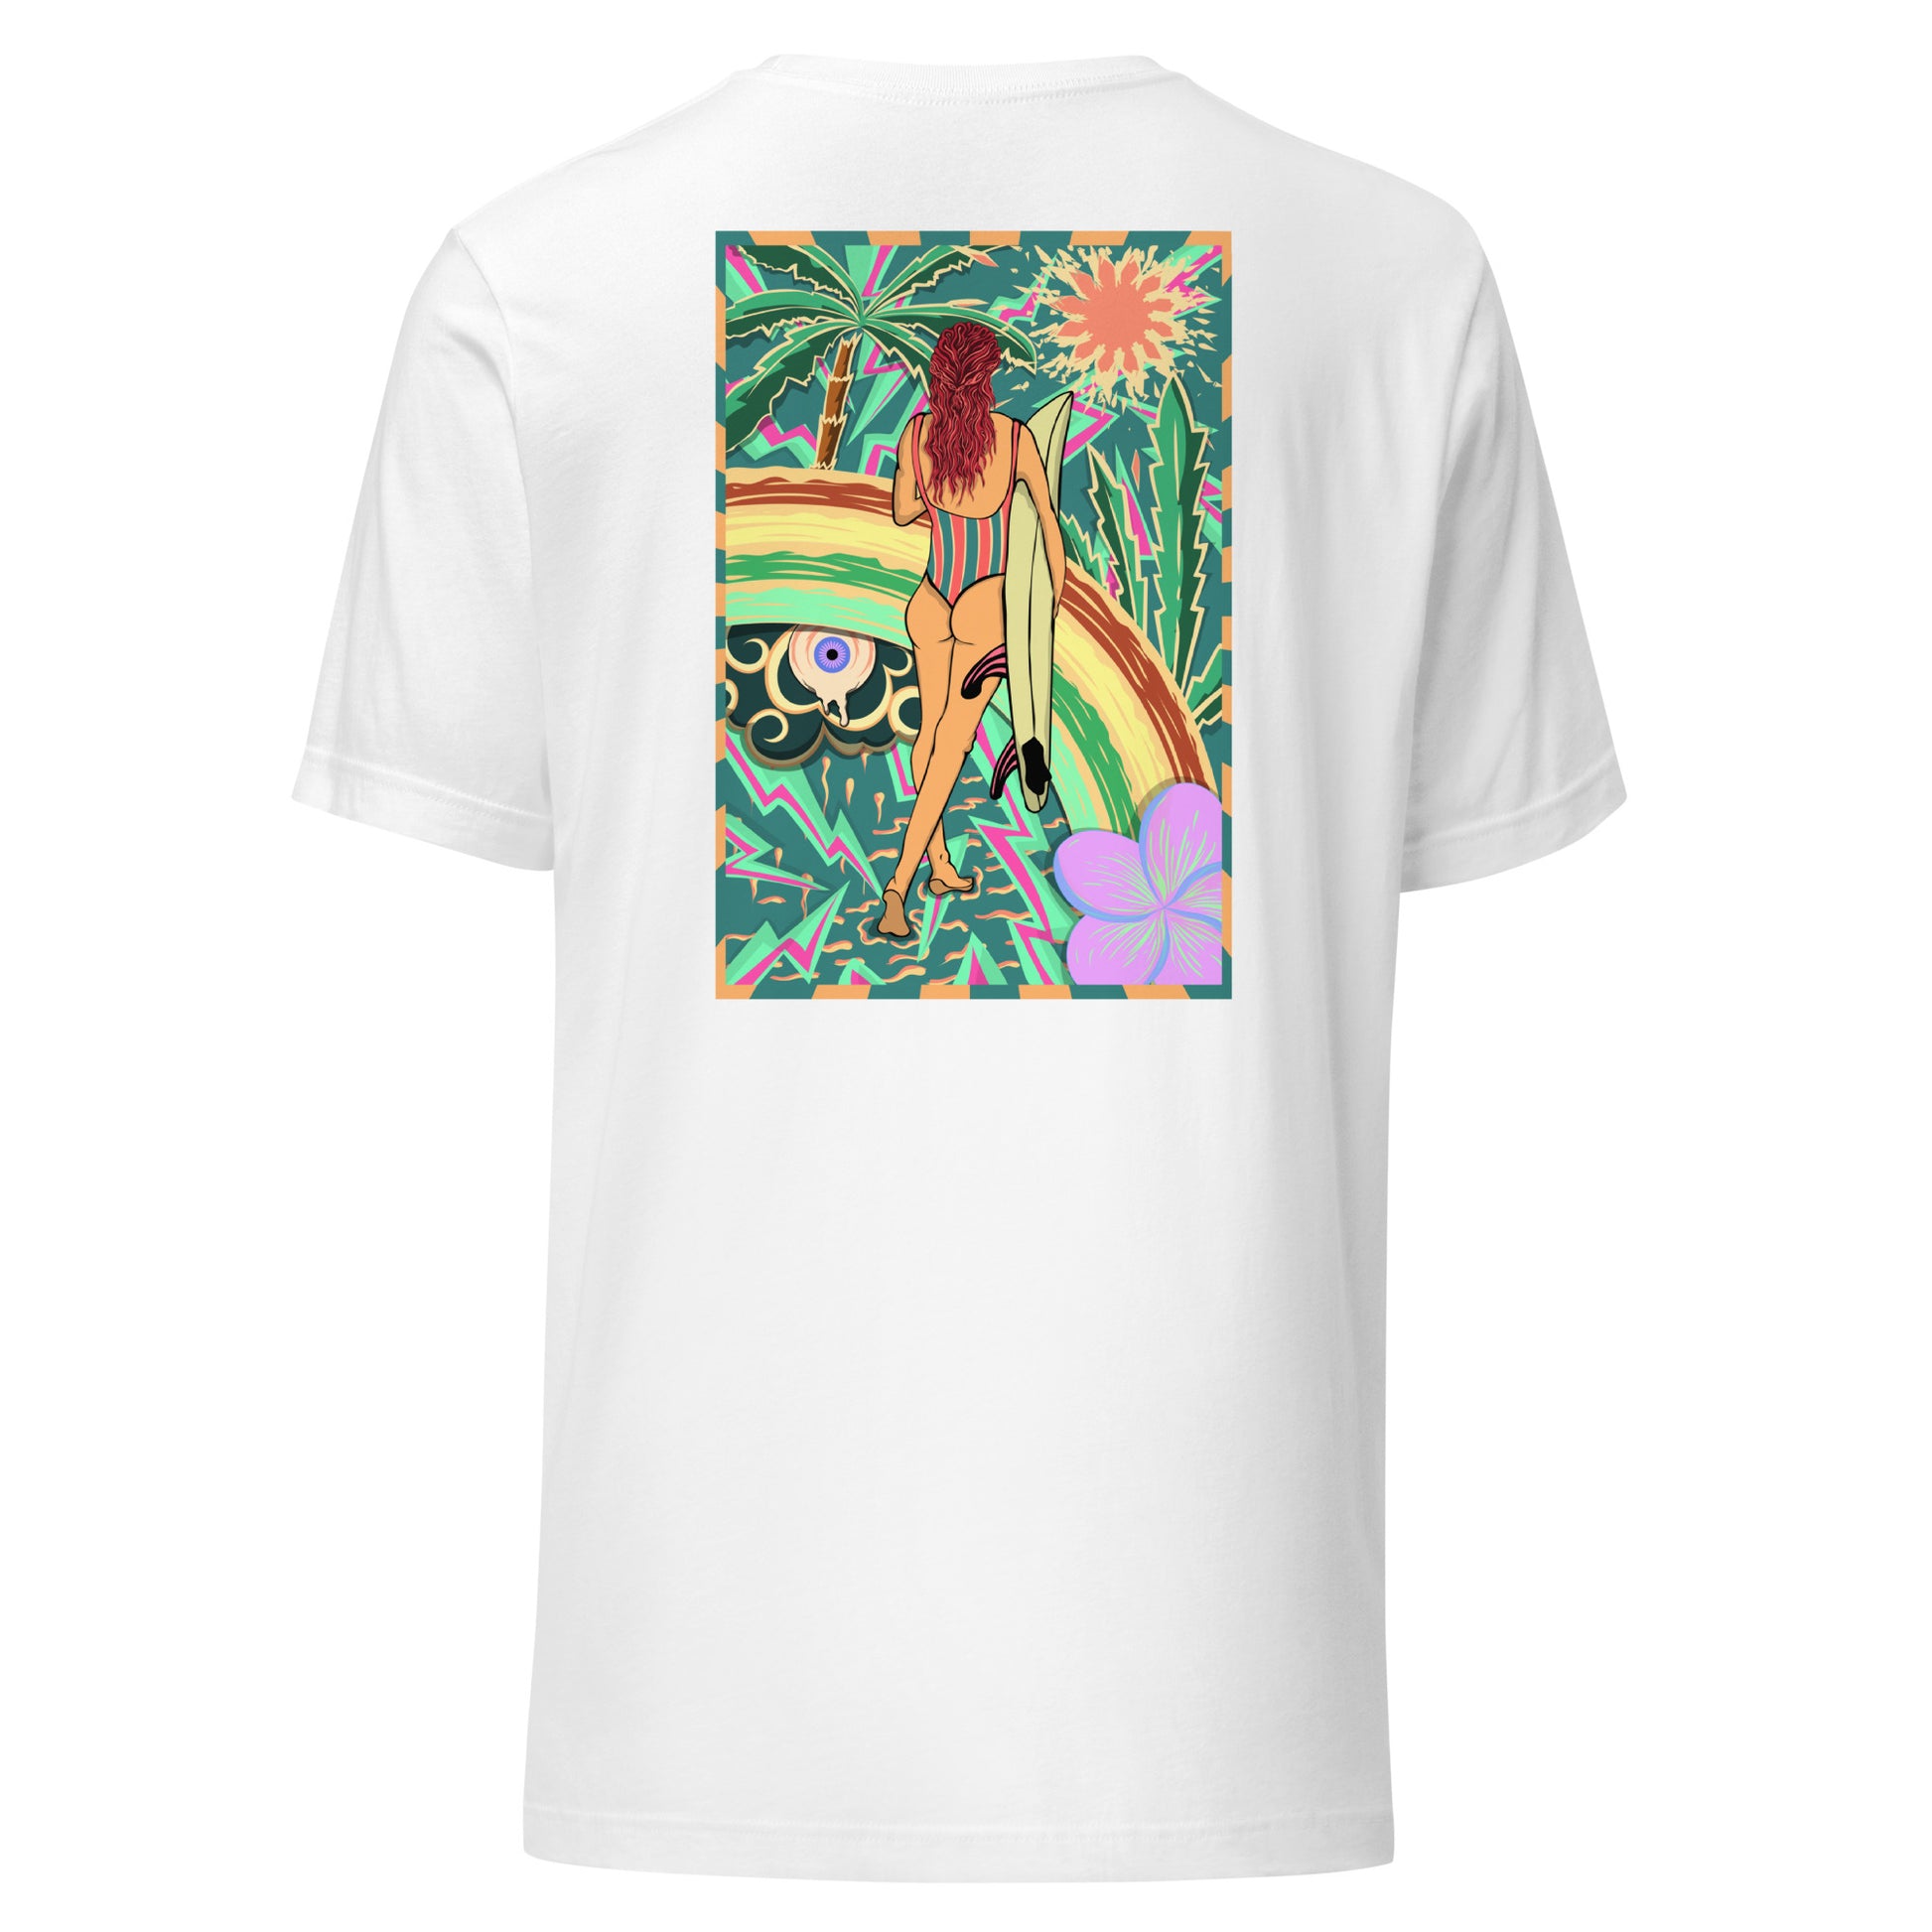 T-shirt surf vintage Walk Of Life surfeuse coloré hippie avec des palmier, fleur, arc en ciel et œil psychédélique. Tshirt dos blanc